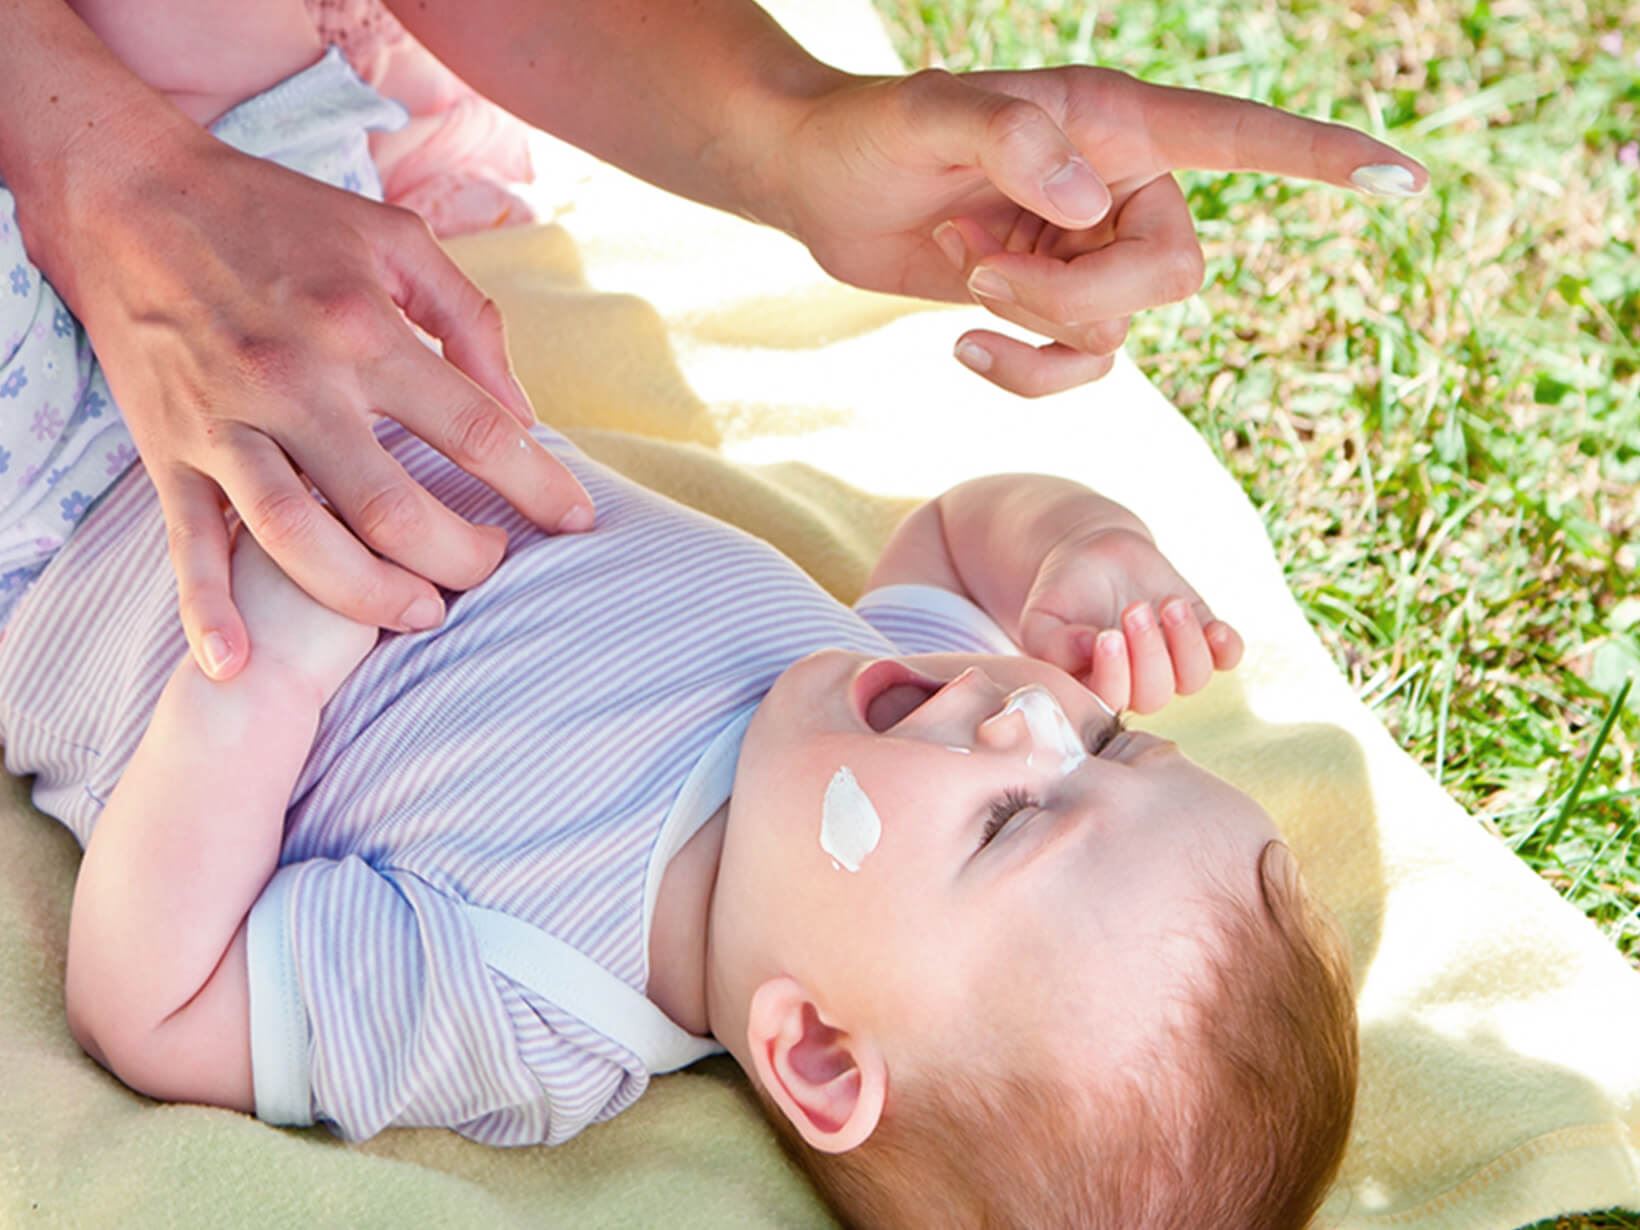 Sonnenschutz bei Babys: So funktioniert das Eincremen